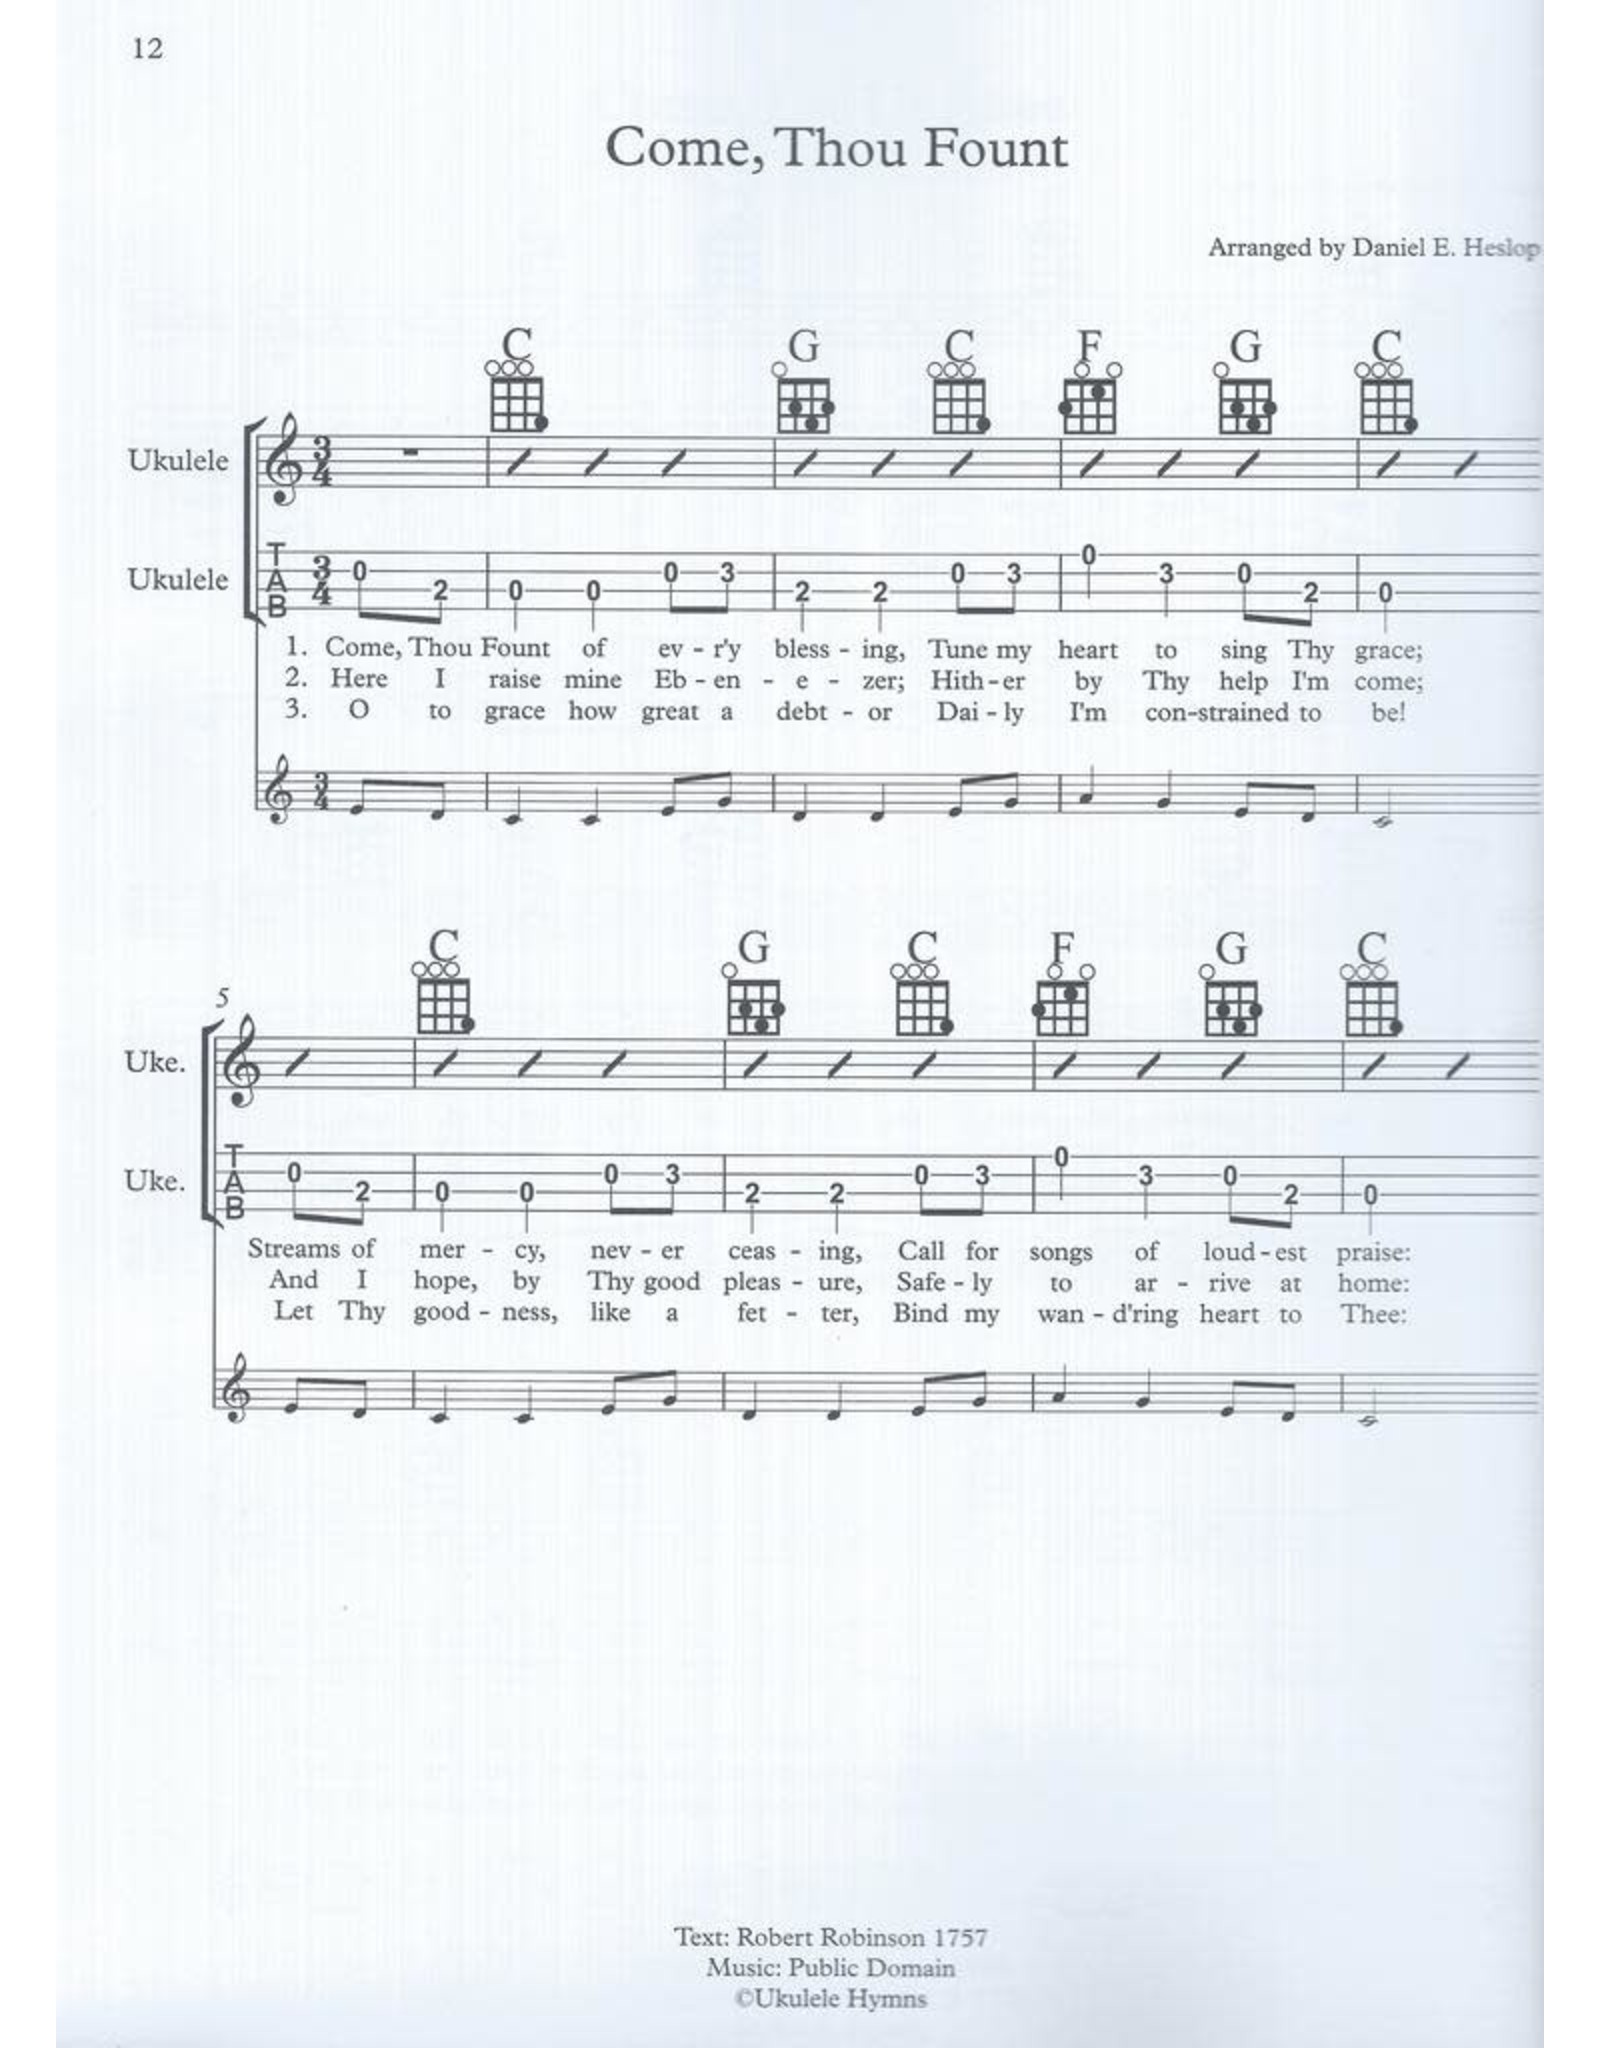 Danny Heslop Music Ukulele Hymns Vol. 1 arr. Danny Heslop